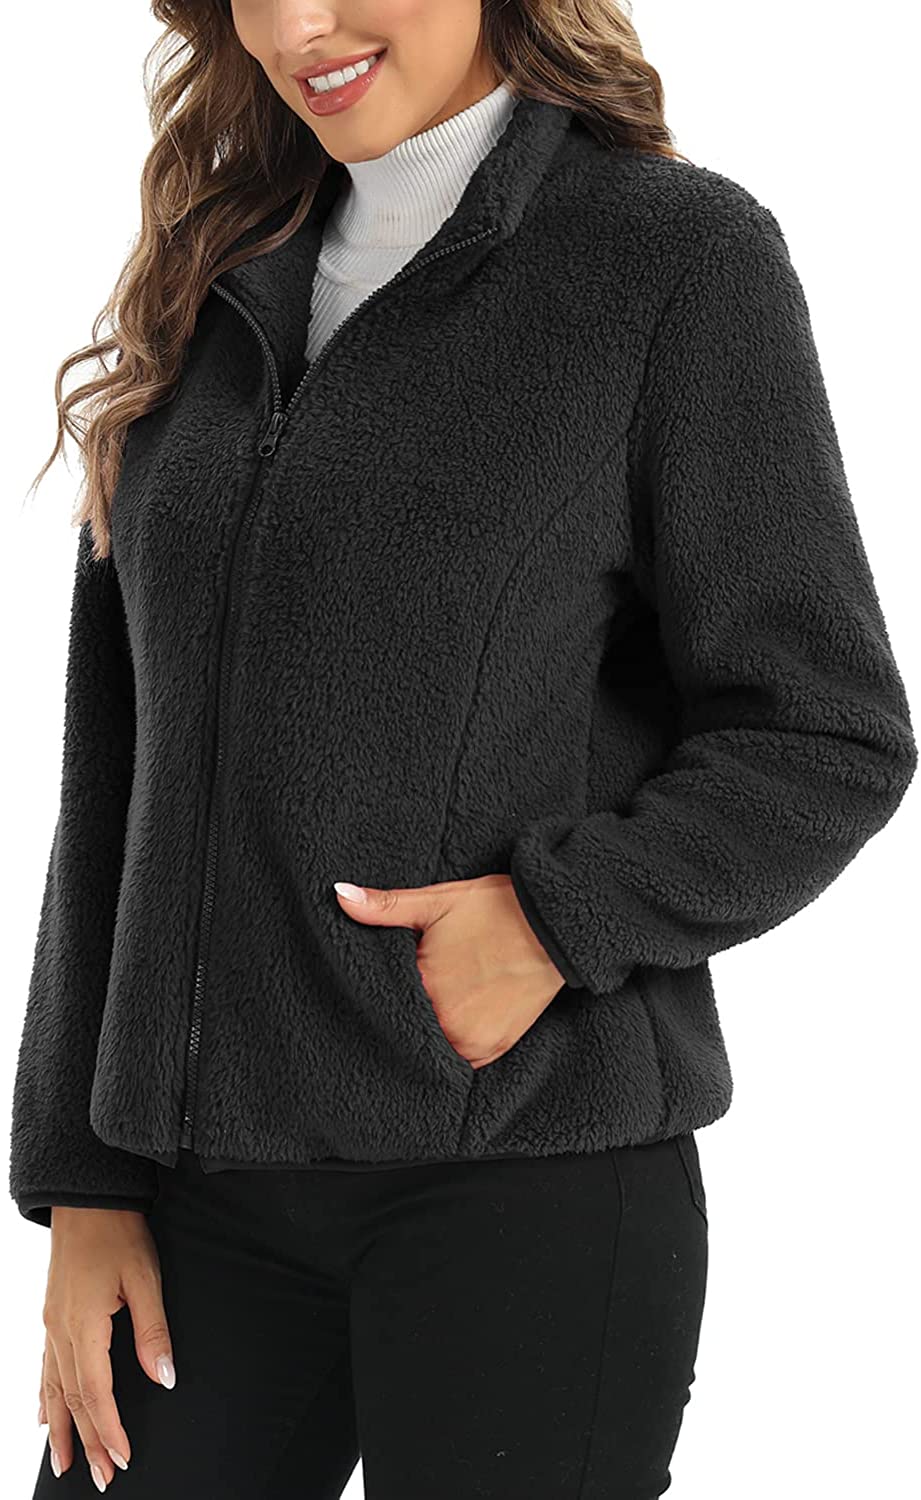 BYWX Women Long Sleeve Sherpa Fleece 1/4 Zip Pullover Outwear Sweatshirt